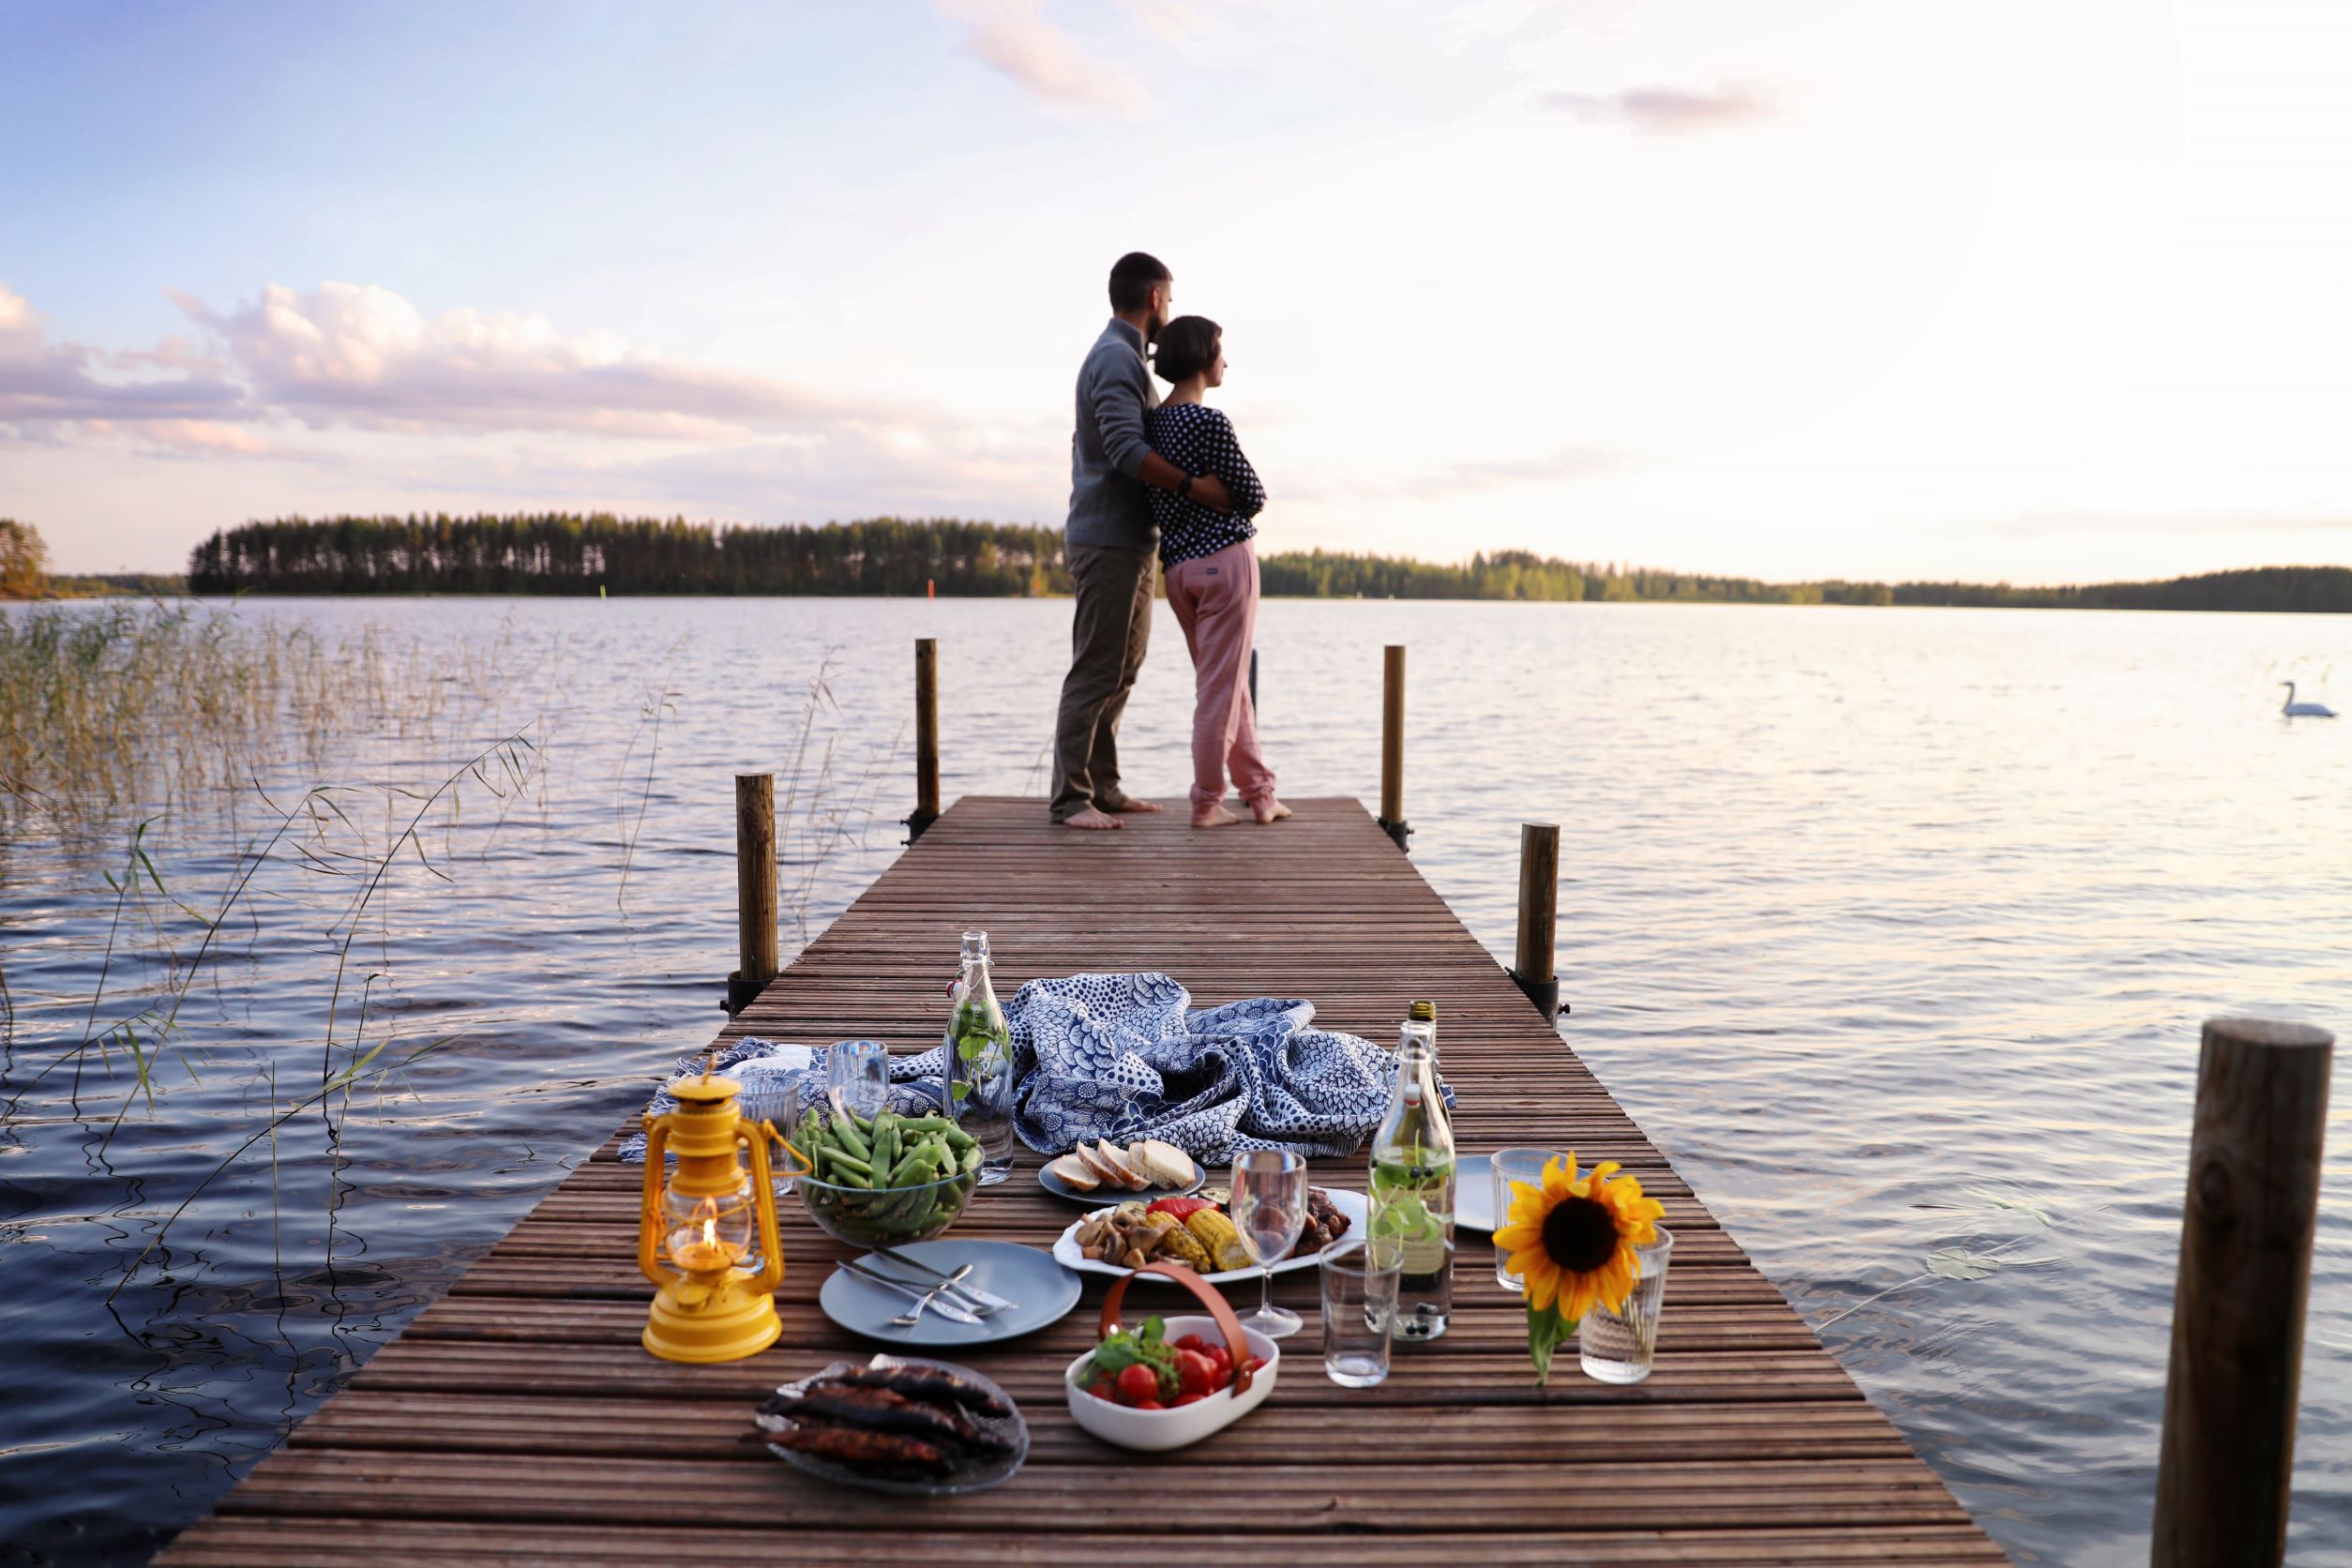 Picknick mit saisonalen und lokalen Lebensmitteln. Foto: Harri Tarvainen